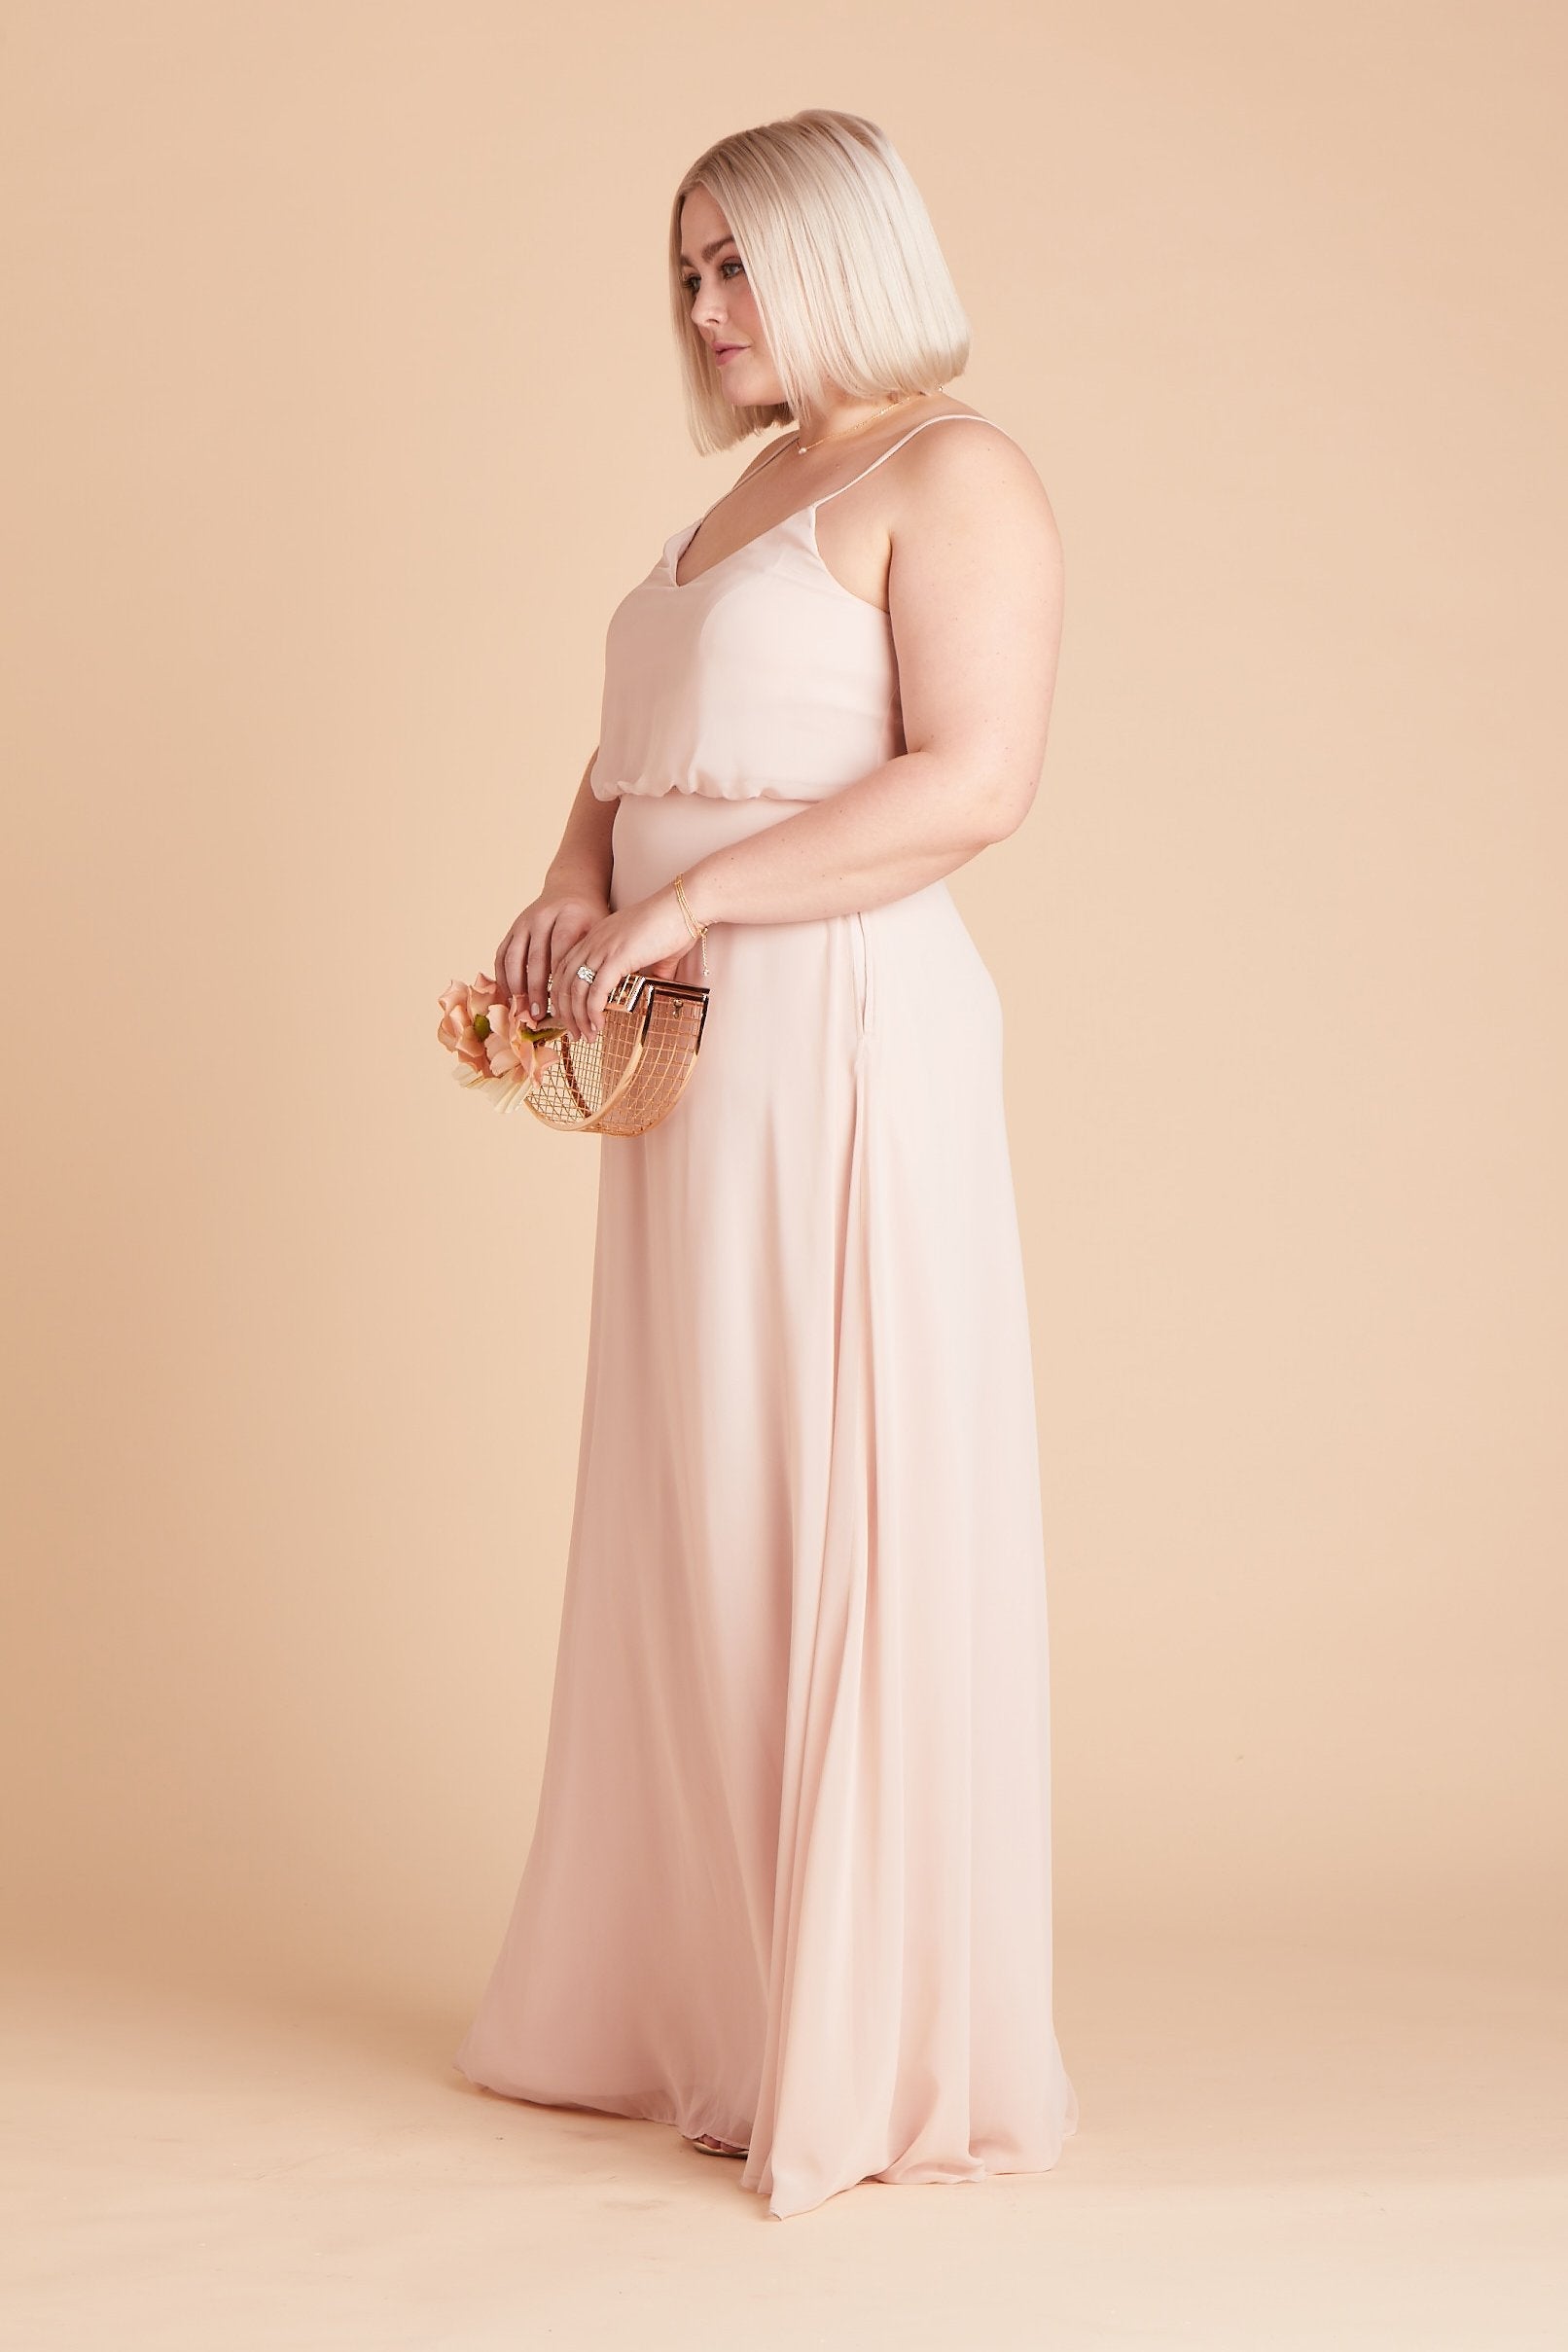 Gwennie plus size bridesmaid dress in pale blush chiffon by Birdy Grey, side view